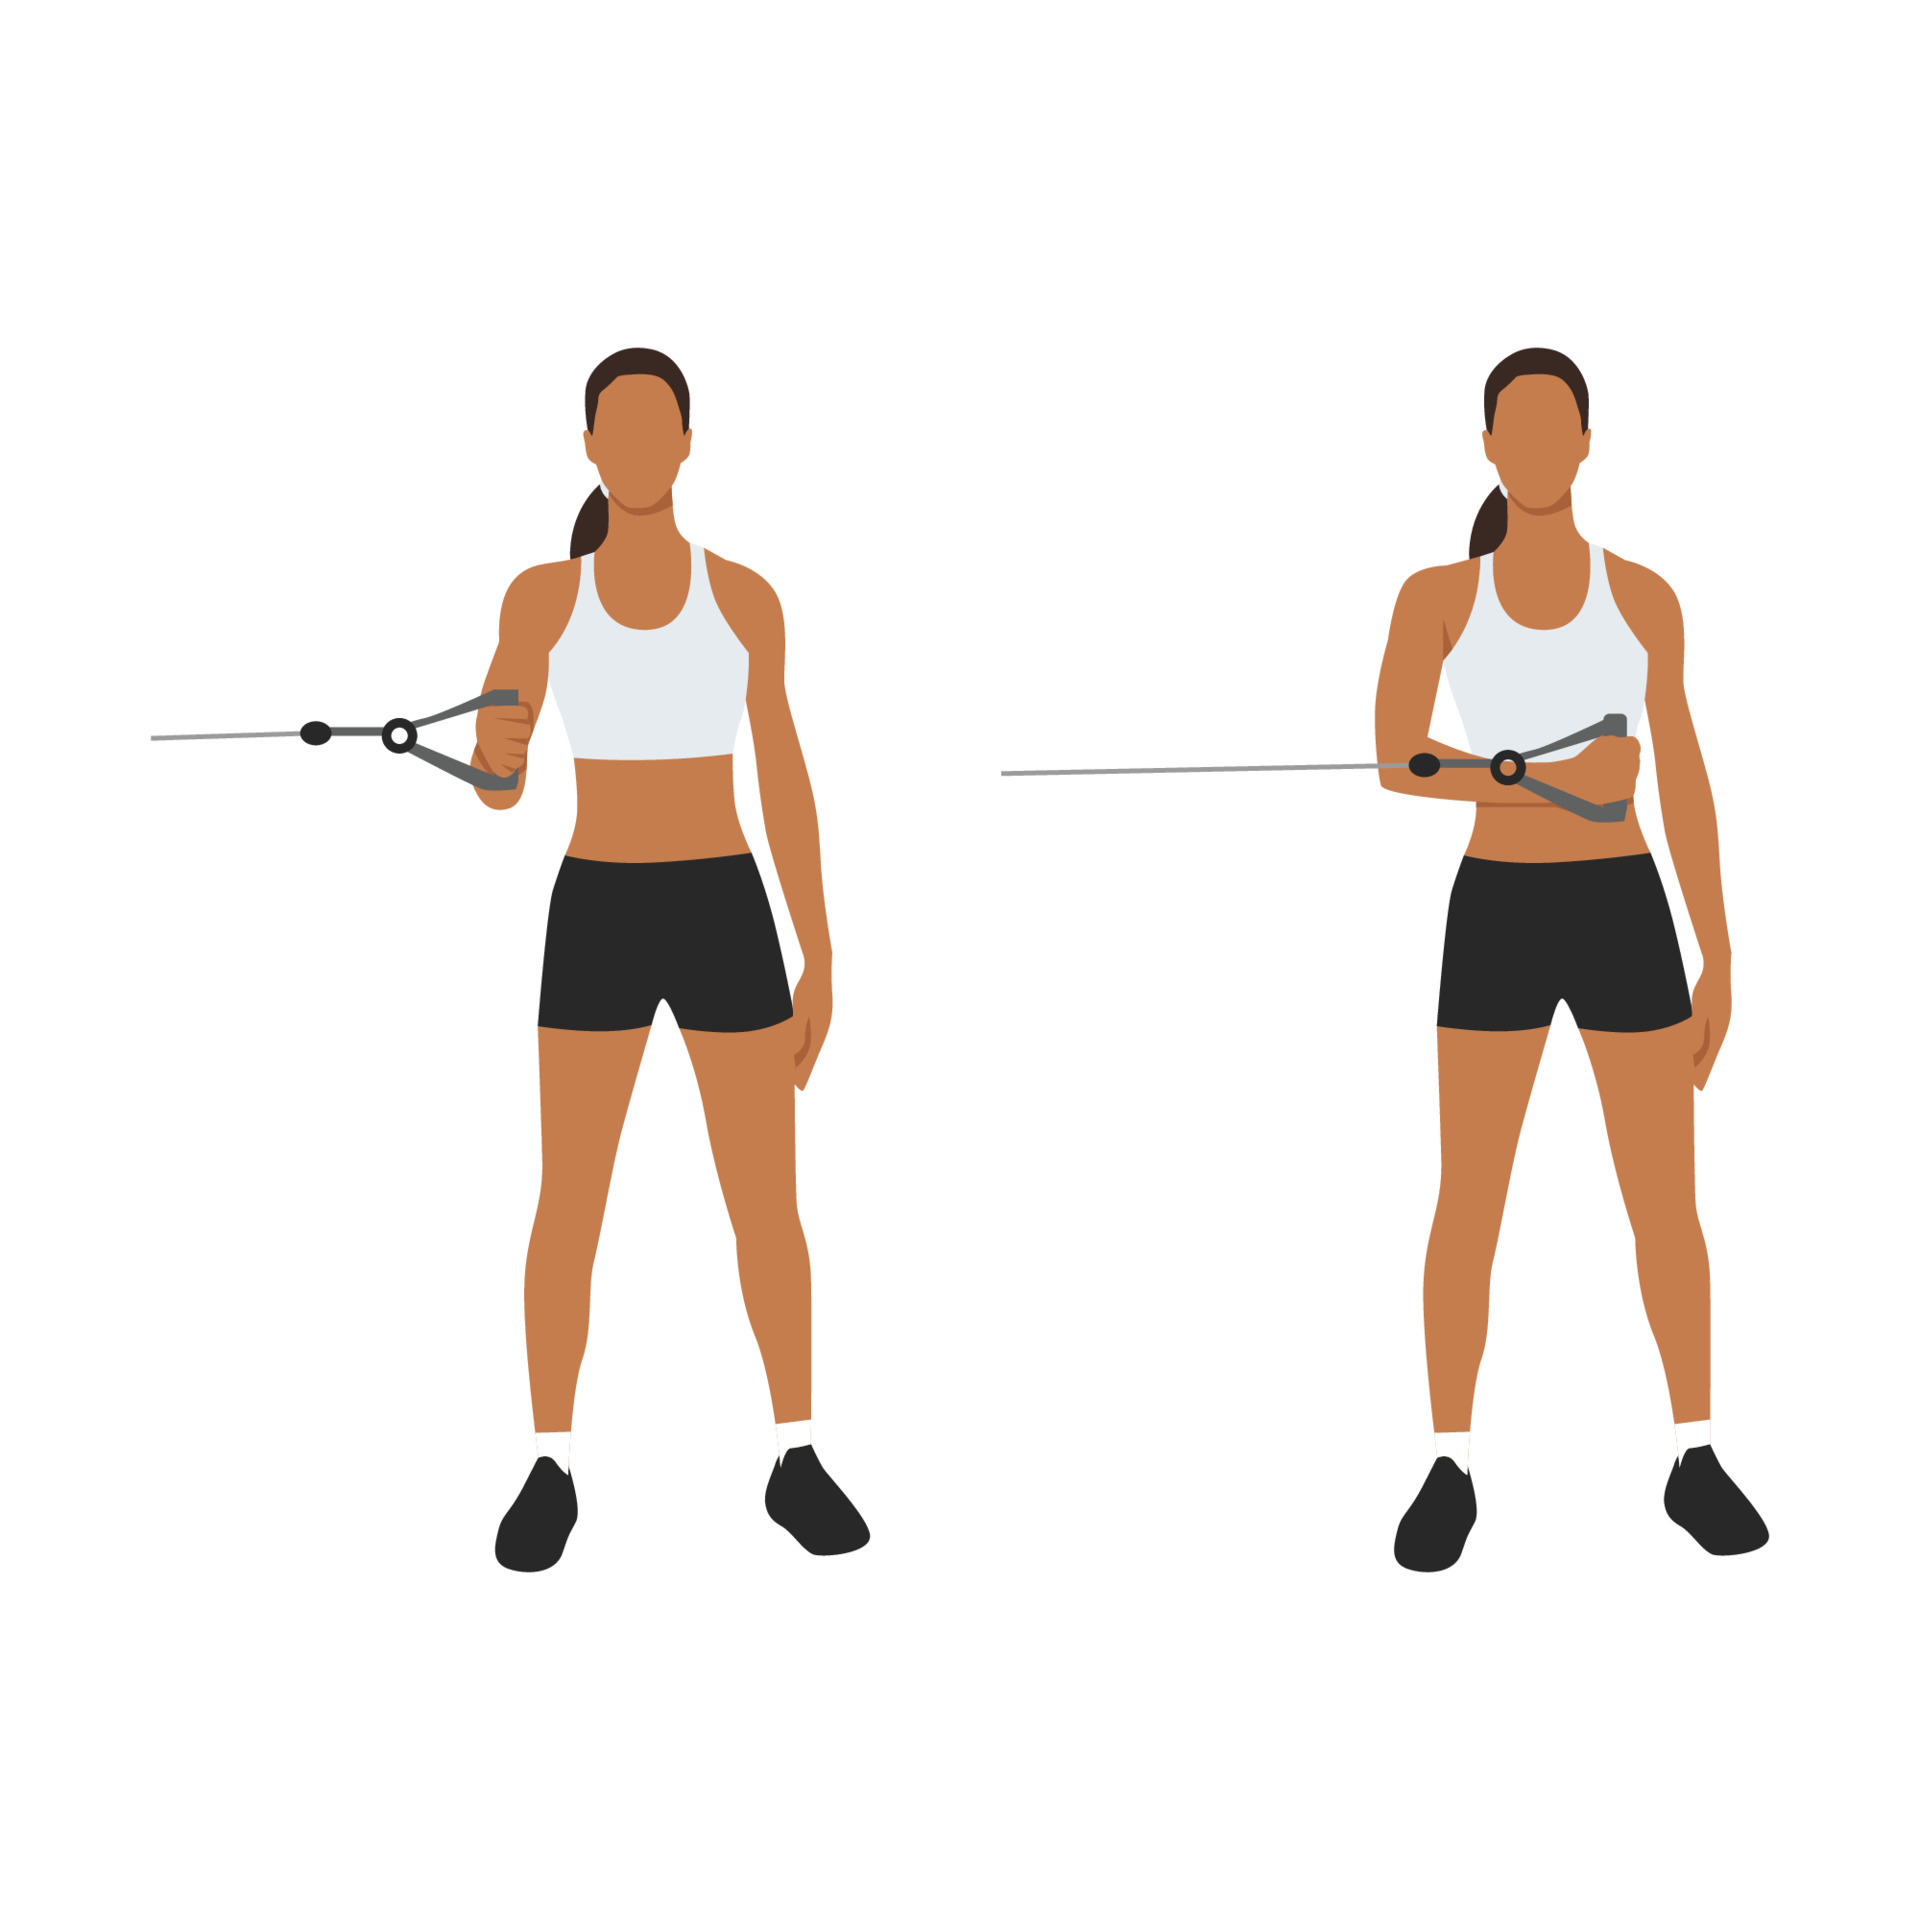 mulher fazendo postura de rotação externa do ombro do cabo para exercício  em 2 etapas. ilustração sobre treino com equipamentos de ginástica para  manter uma articulação do ombro forte e estável. ilustração